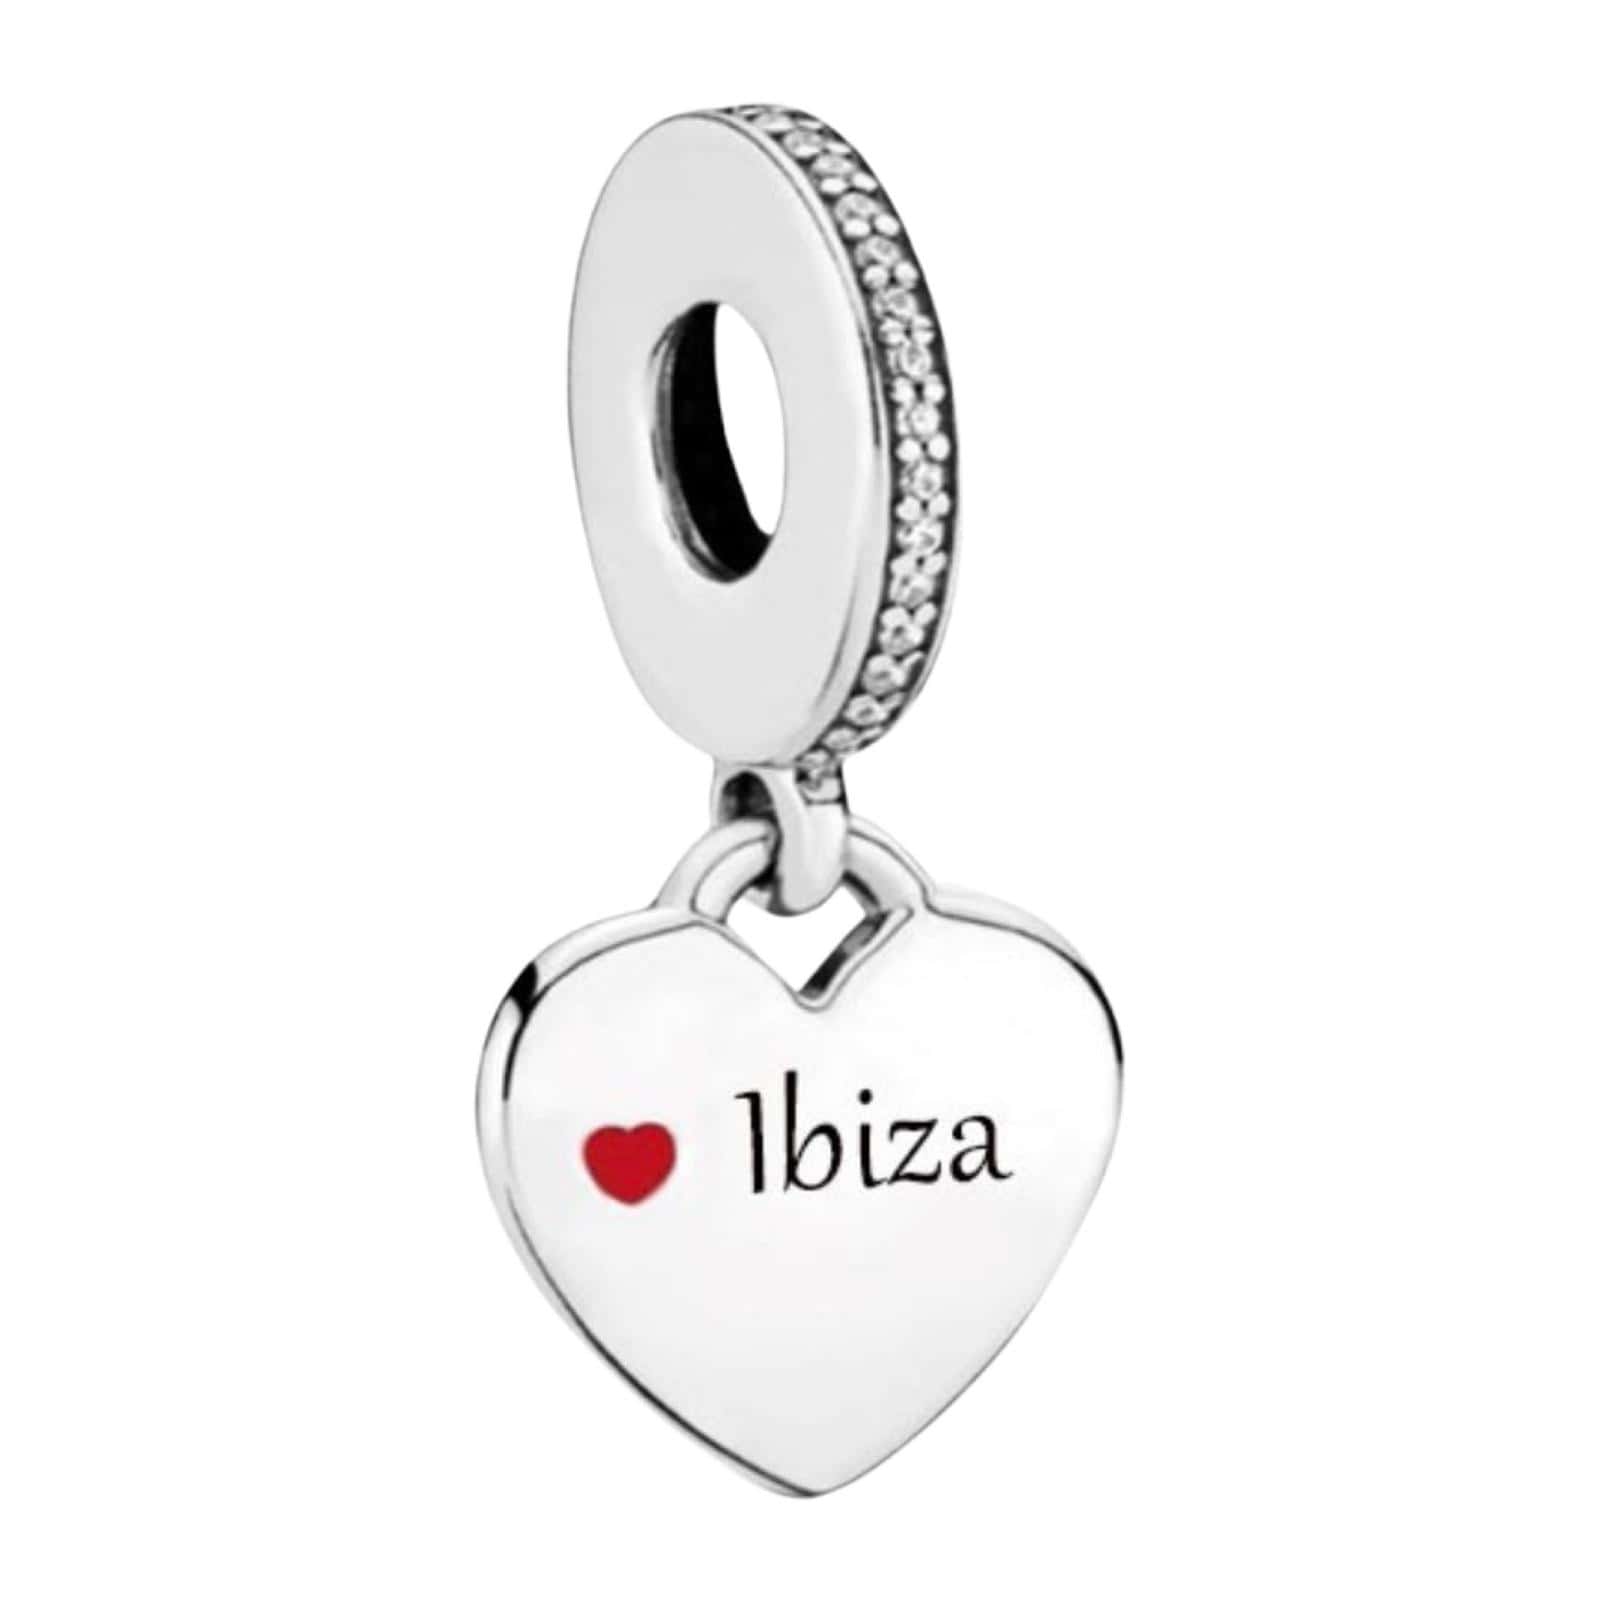 Product Afbeelding Vooraanzicht van onze prachtige hart bedel uit de reis en liefde collectie. Deze charm heeft ibiza gegraveerd met een rood emaille hartje. De bedel is gemaakt van 925 sterling zilver.